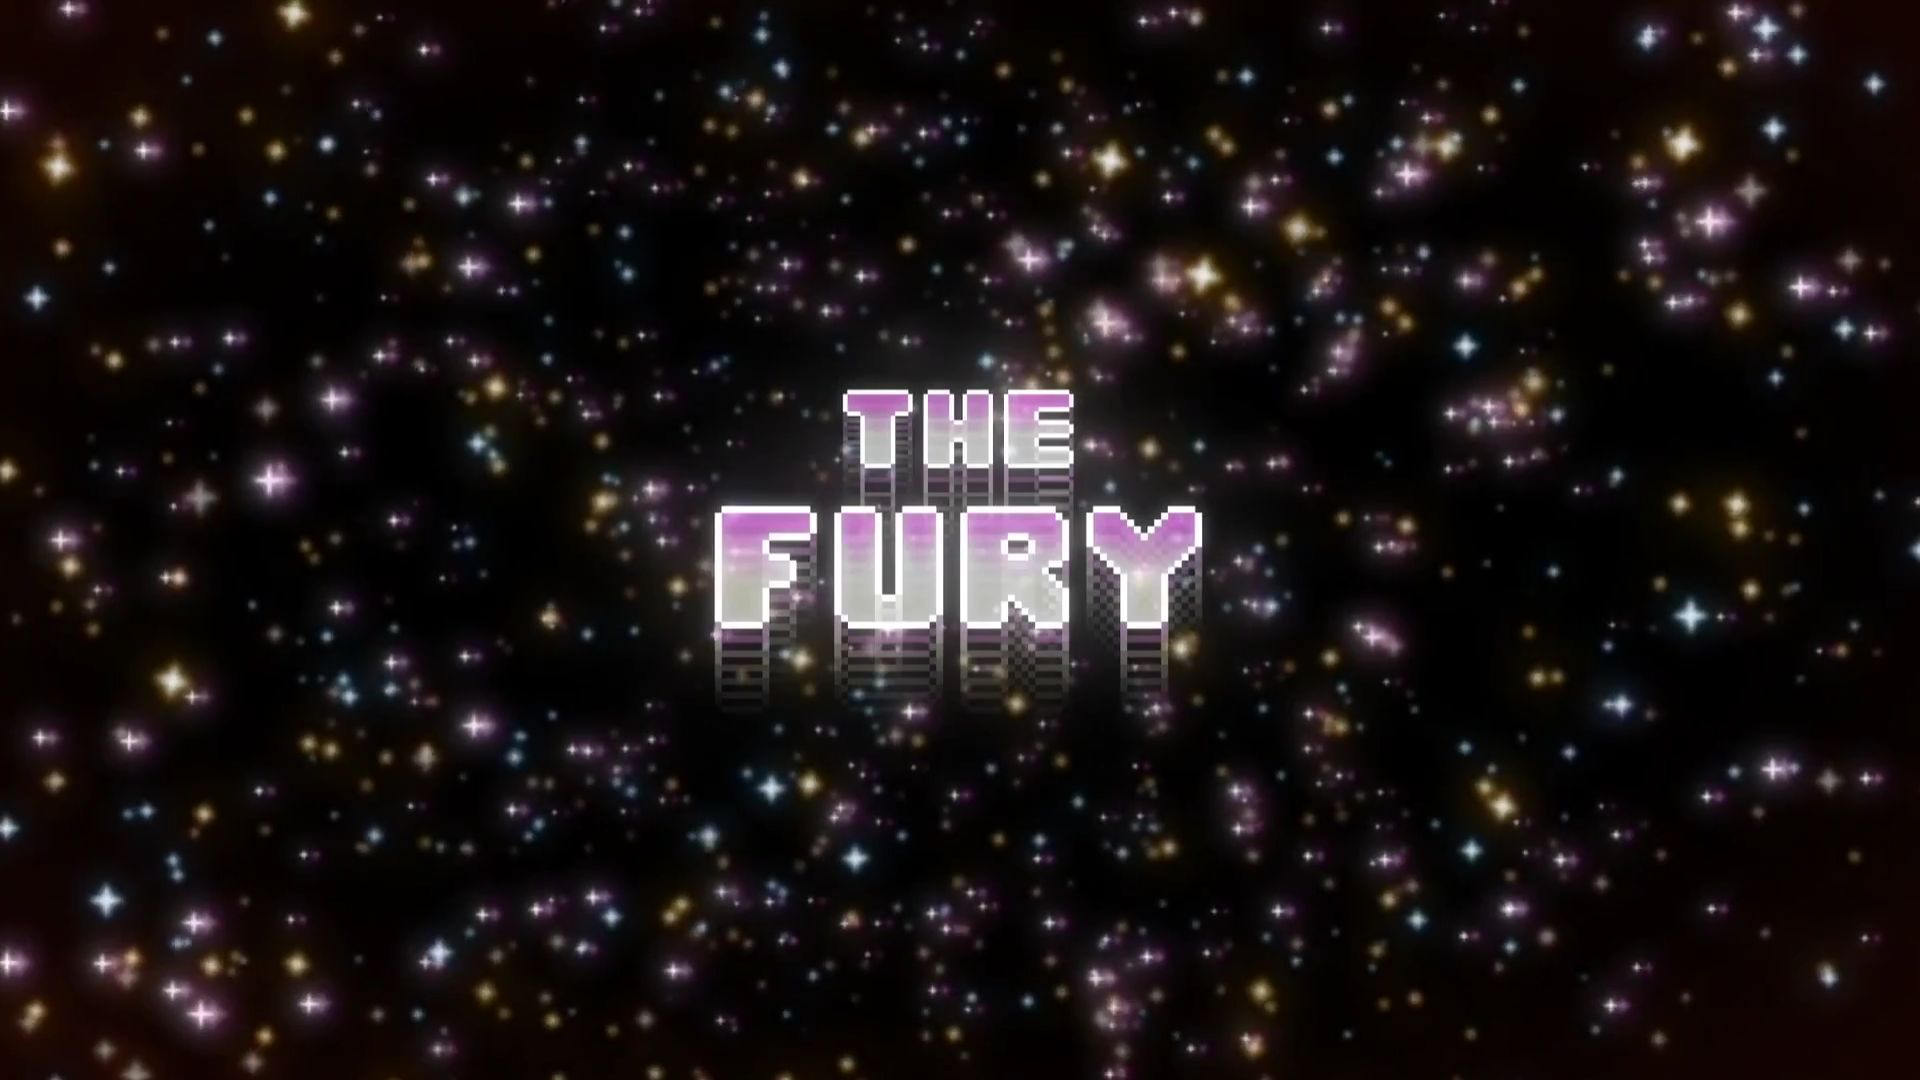 The Amazing World of Gumball The Fury (TV Episode 2016) - IMDb